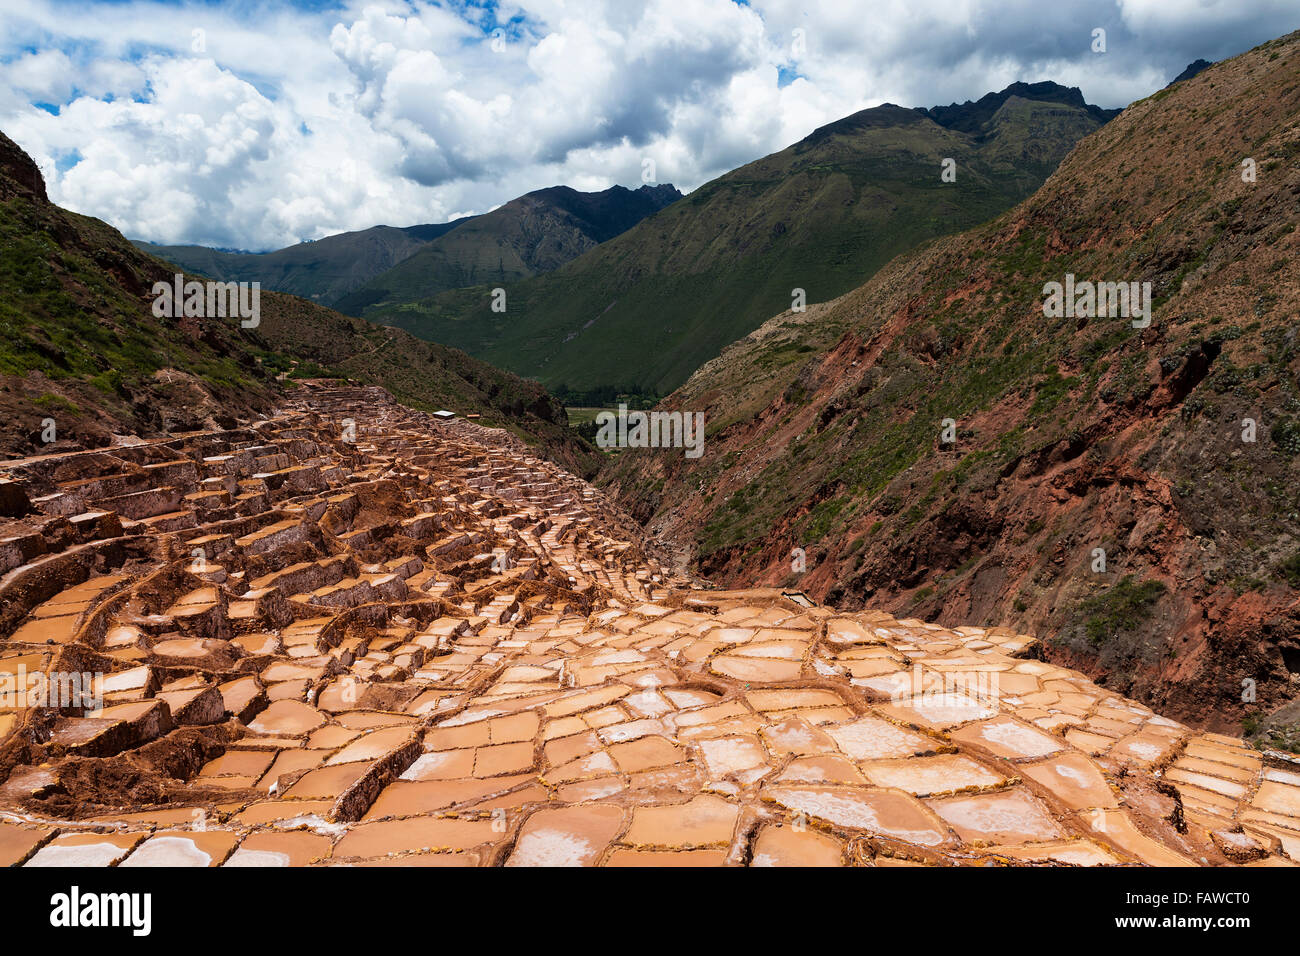 Vista del Maras Miniere di Sale nei pressi del villaggio di Maras, Valle Sacra, Perù Foto Stock